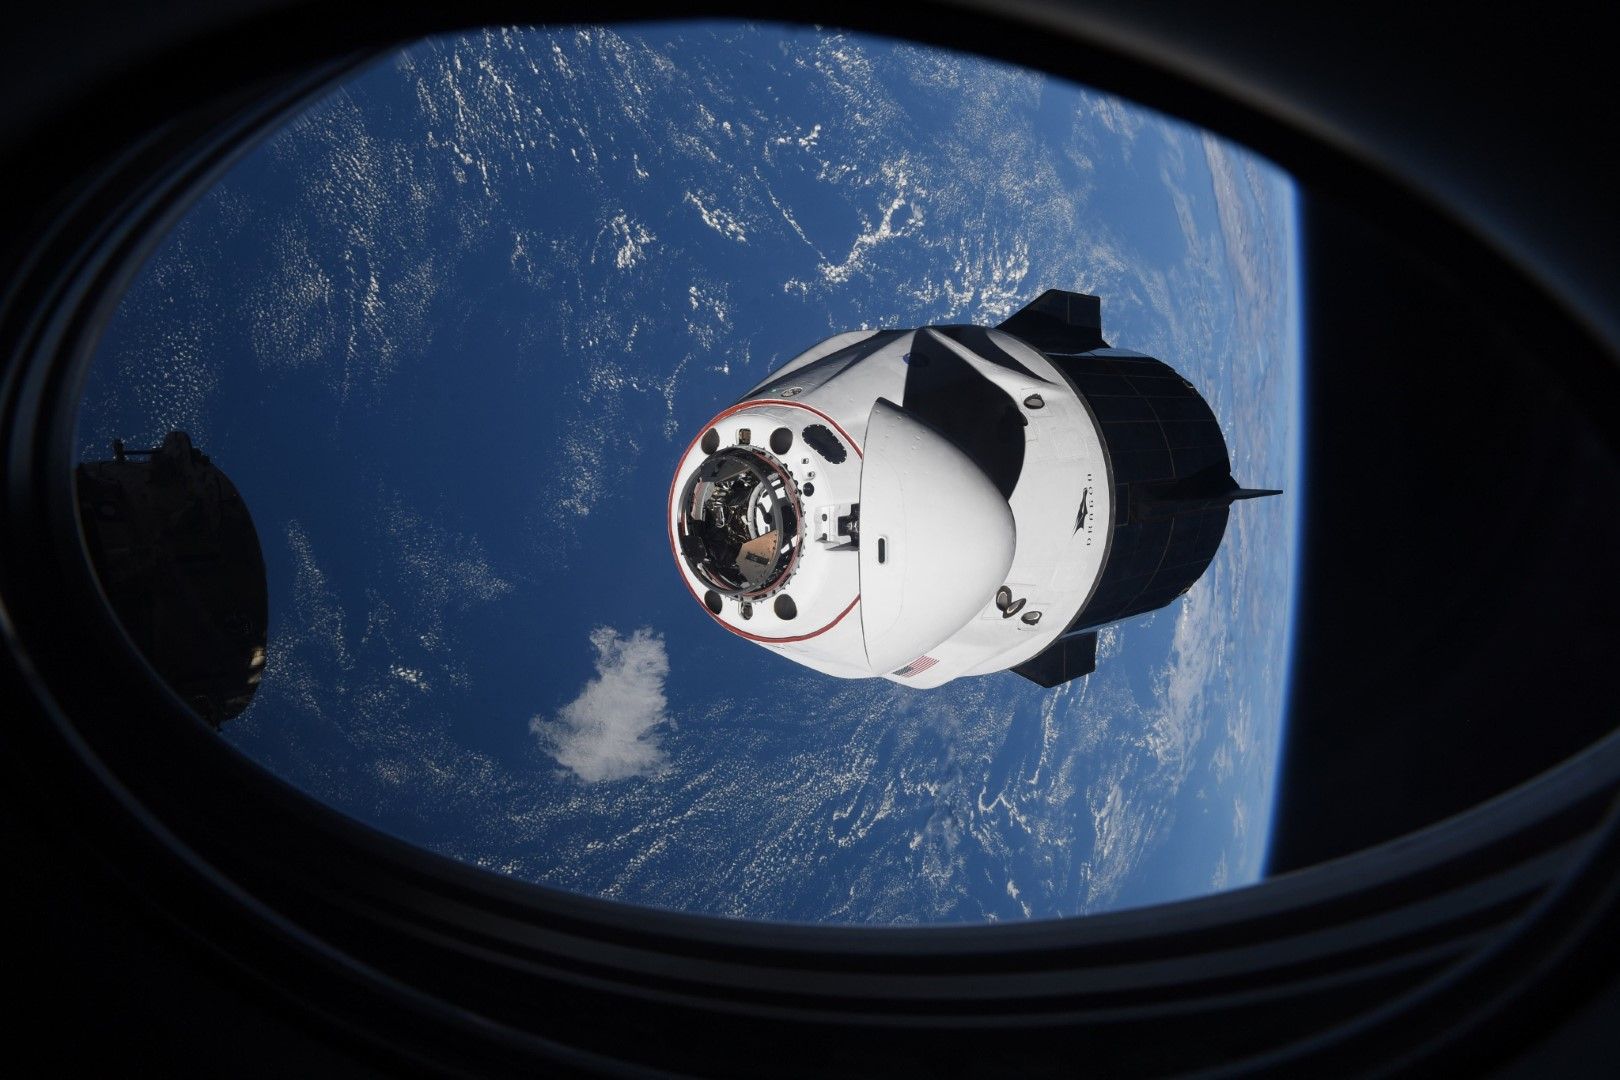 Капсулата на SpaceX Crew Dragon се приближава до Международната космическа станция - МКС - за скачване. НАСА смята, че МКС остава изложена на повишен риск от орбитални отломки след изпитанието на руските оръжия тази седмица. В понеделник, 15 ноември 2021 